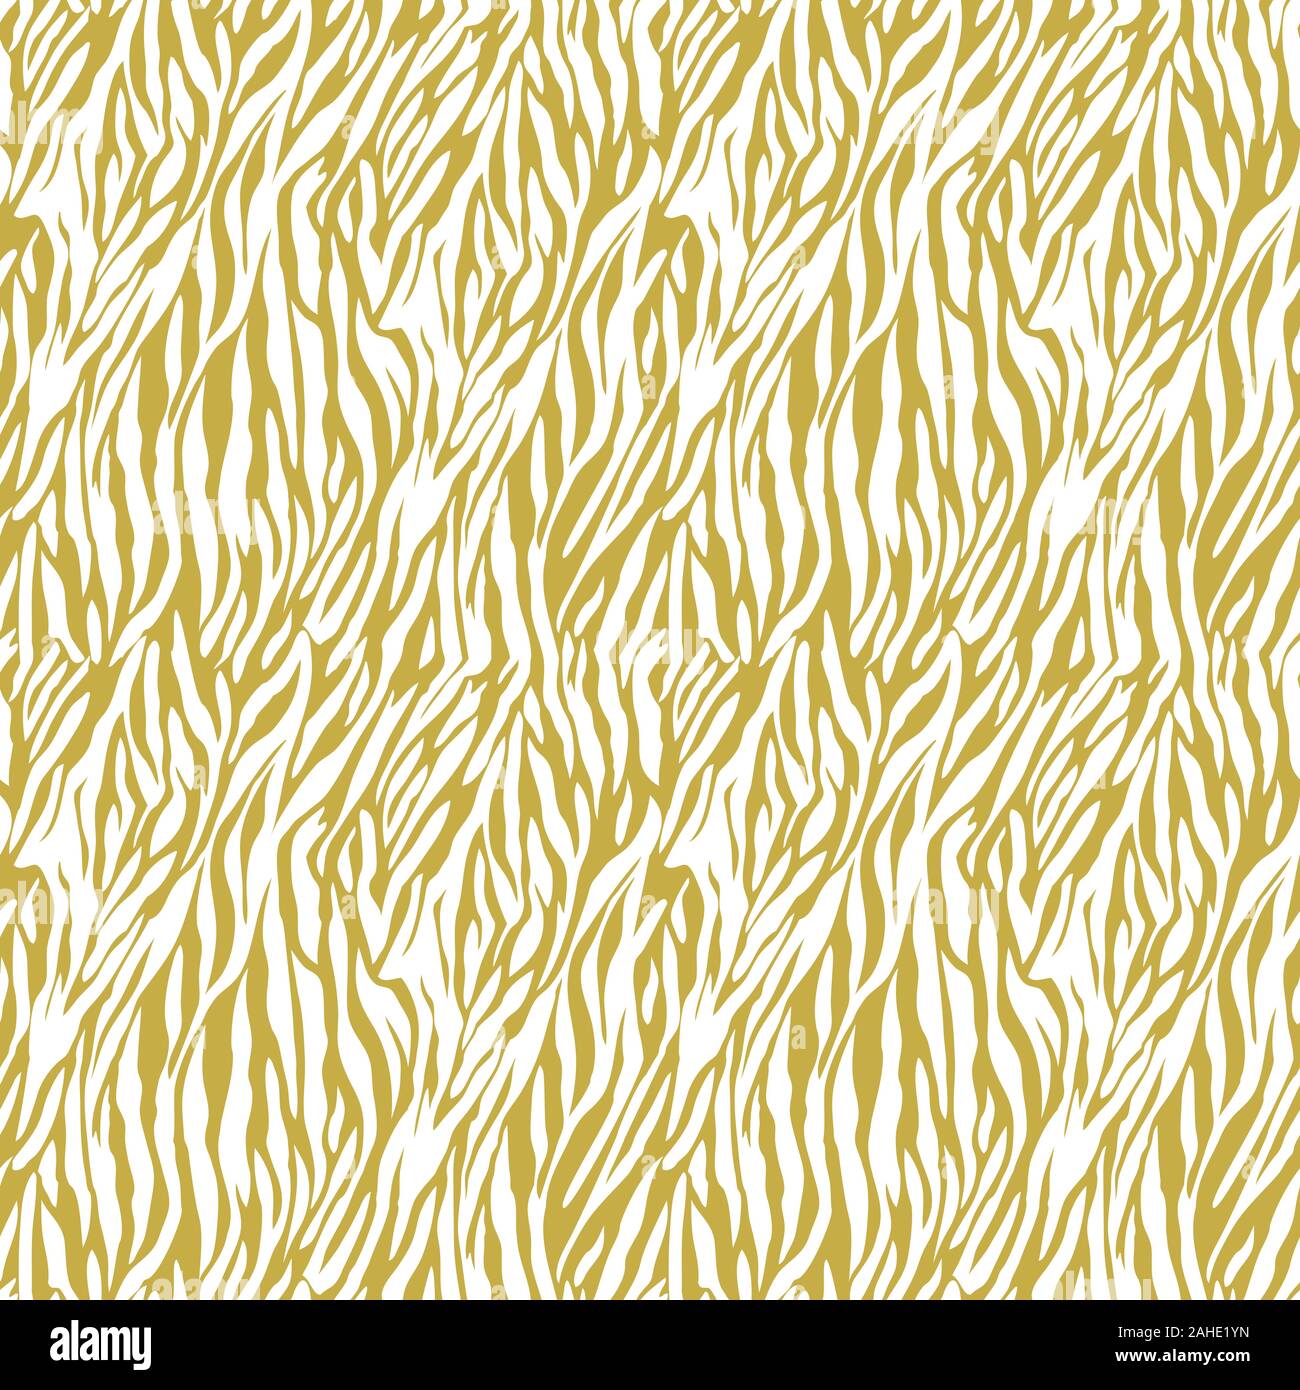 Ligne de Zebra background repeat pattern transparente Banque D'Images